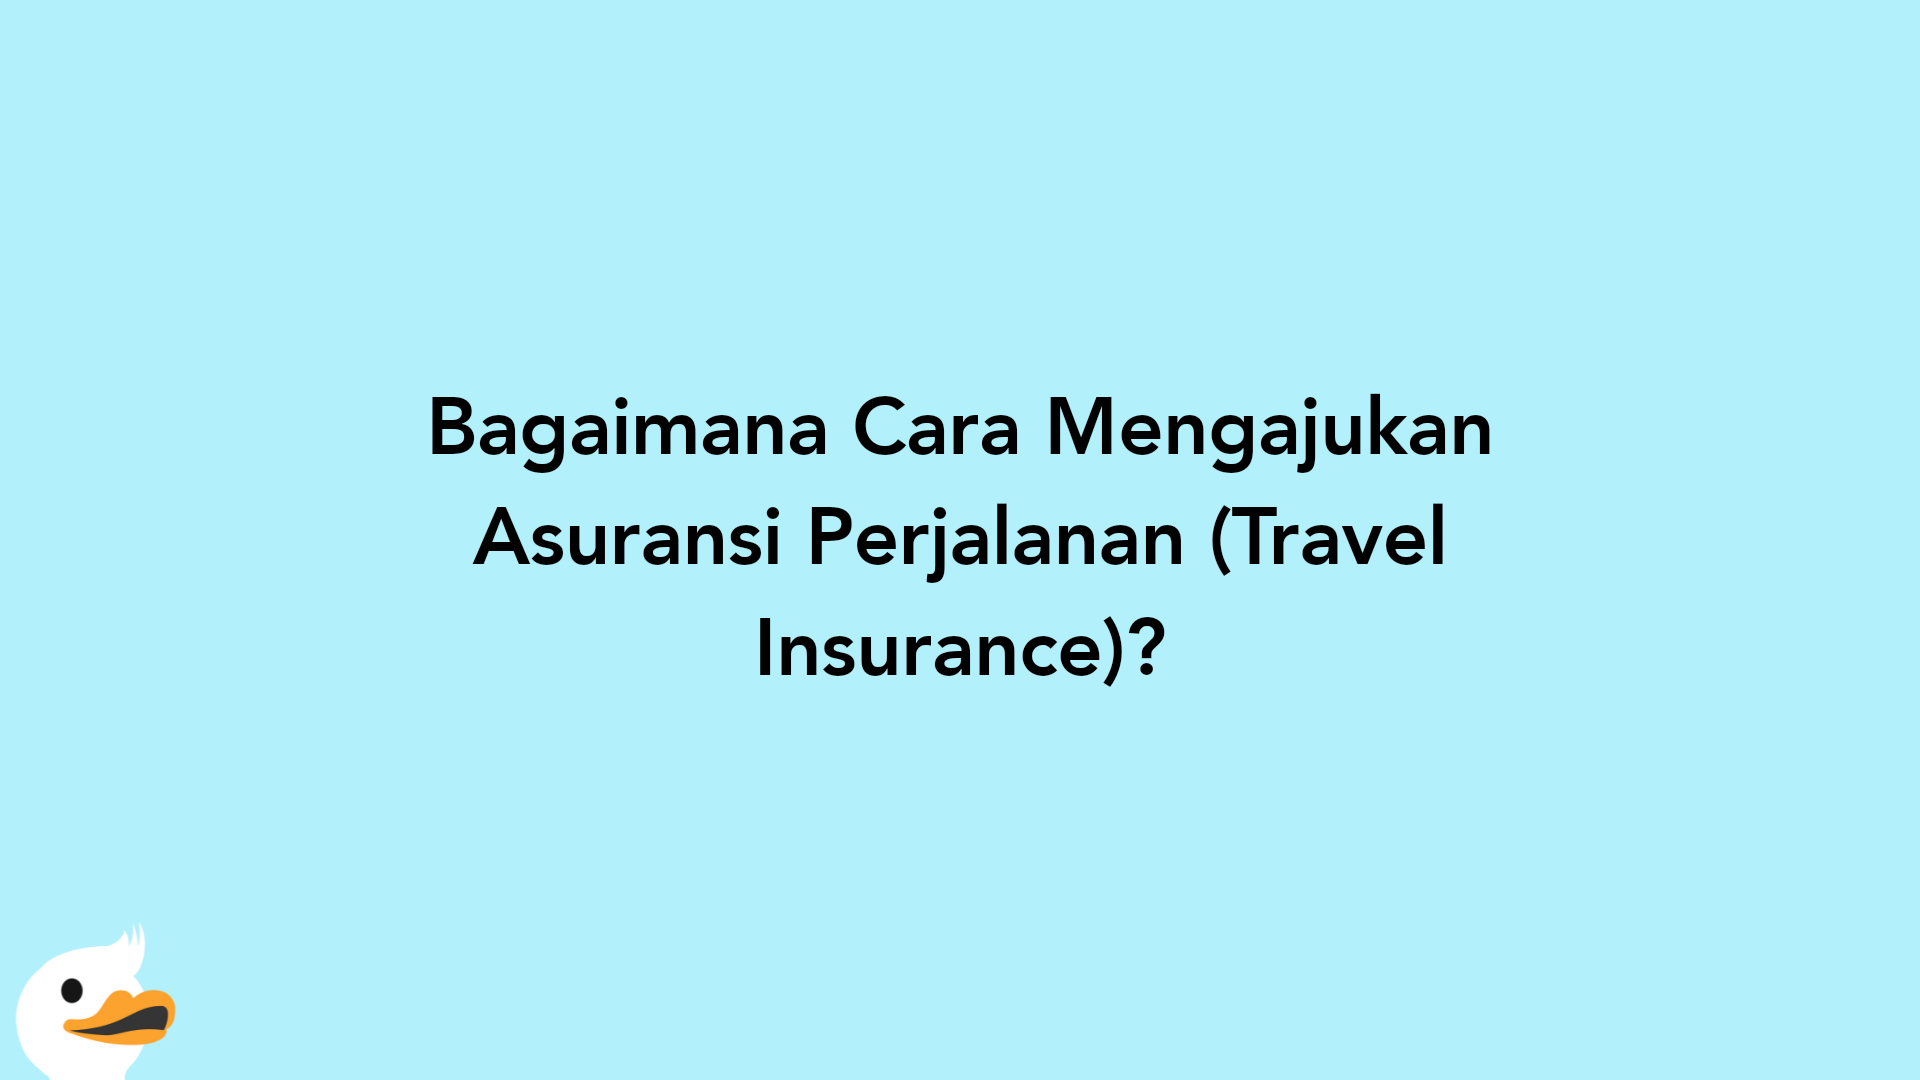 Bagaimana Cara Mengajukan Asuransi Perjalanan (Travel Insurance)?